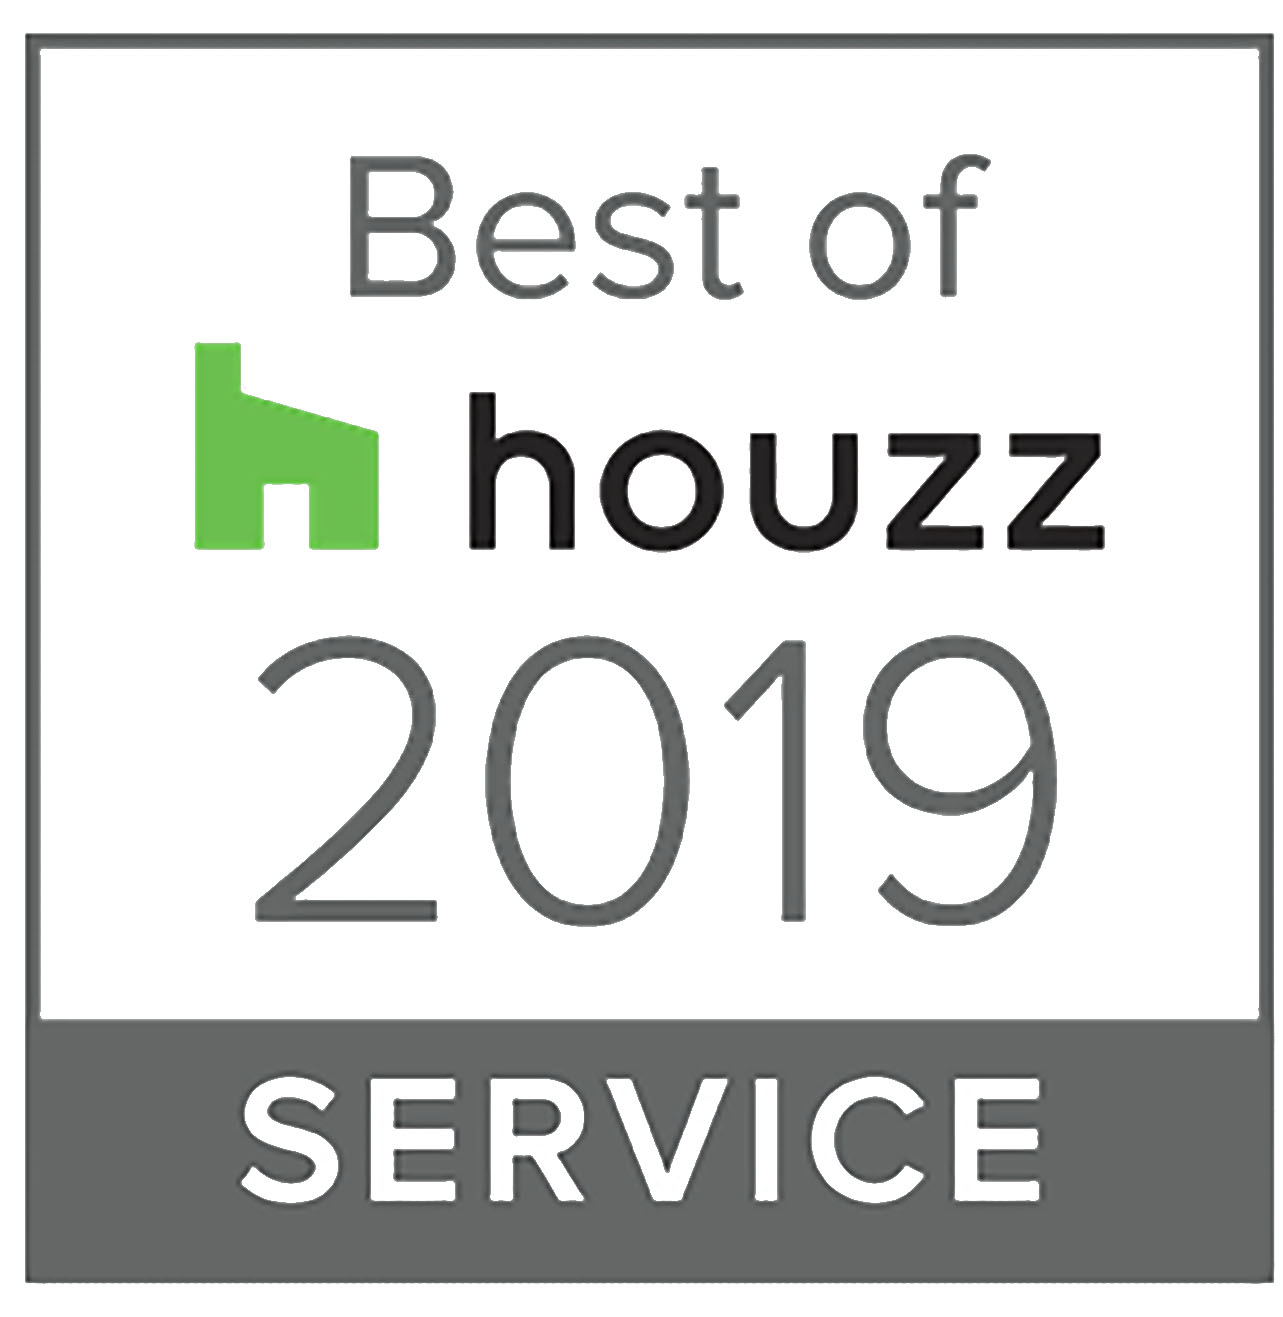 Best of service Houzz 2019